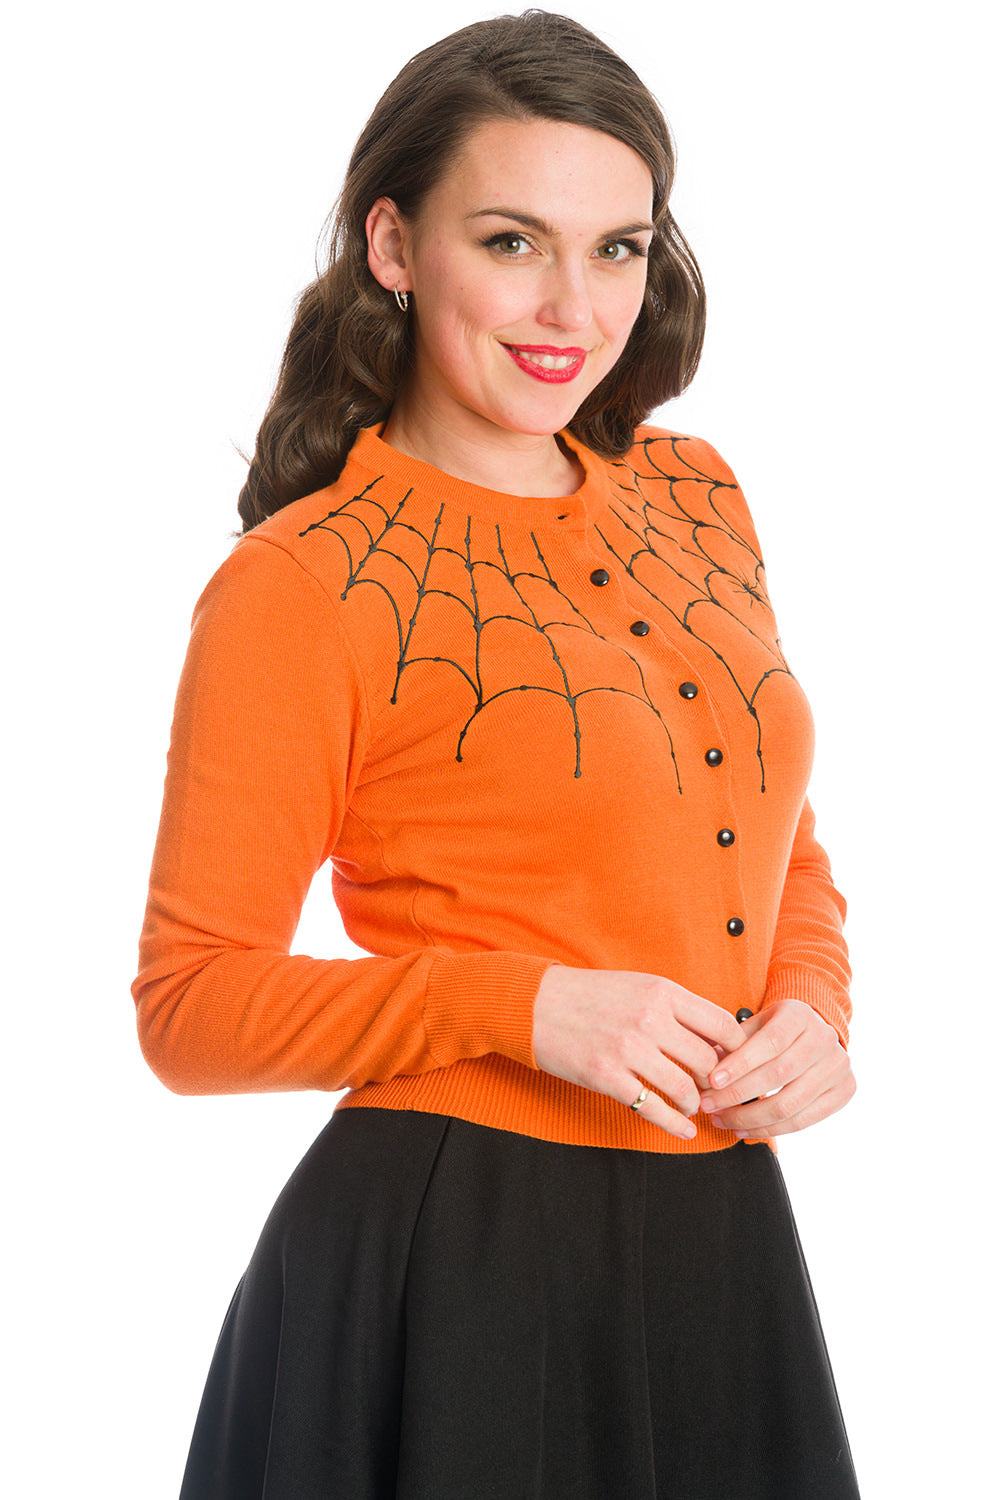 Banned Alternative Under Her Web Spell Spiderweb Cardigan